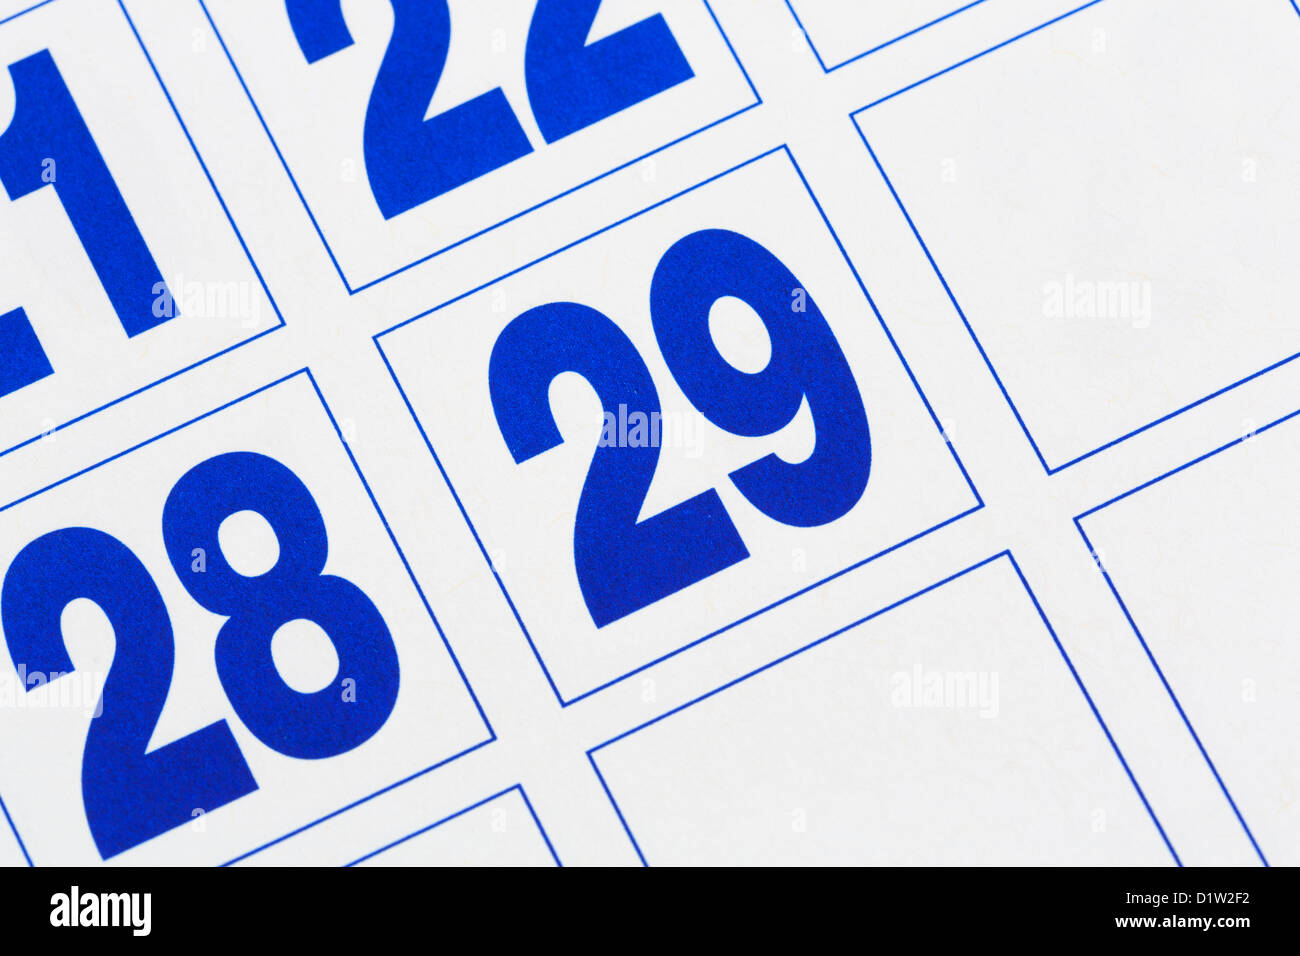 Primo piano dell'ultimo giorno in un calendario che mostra il 29th giorno del mese di febbraio in un anno bisestile 2016 o 2020 Foto Stock